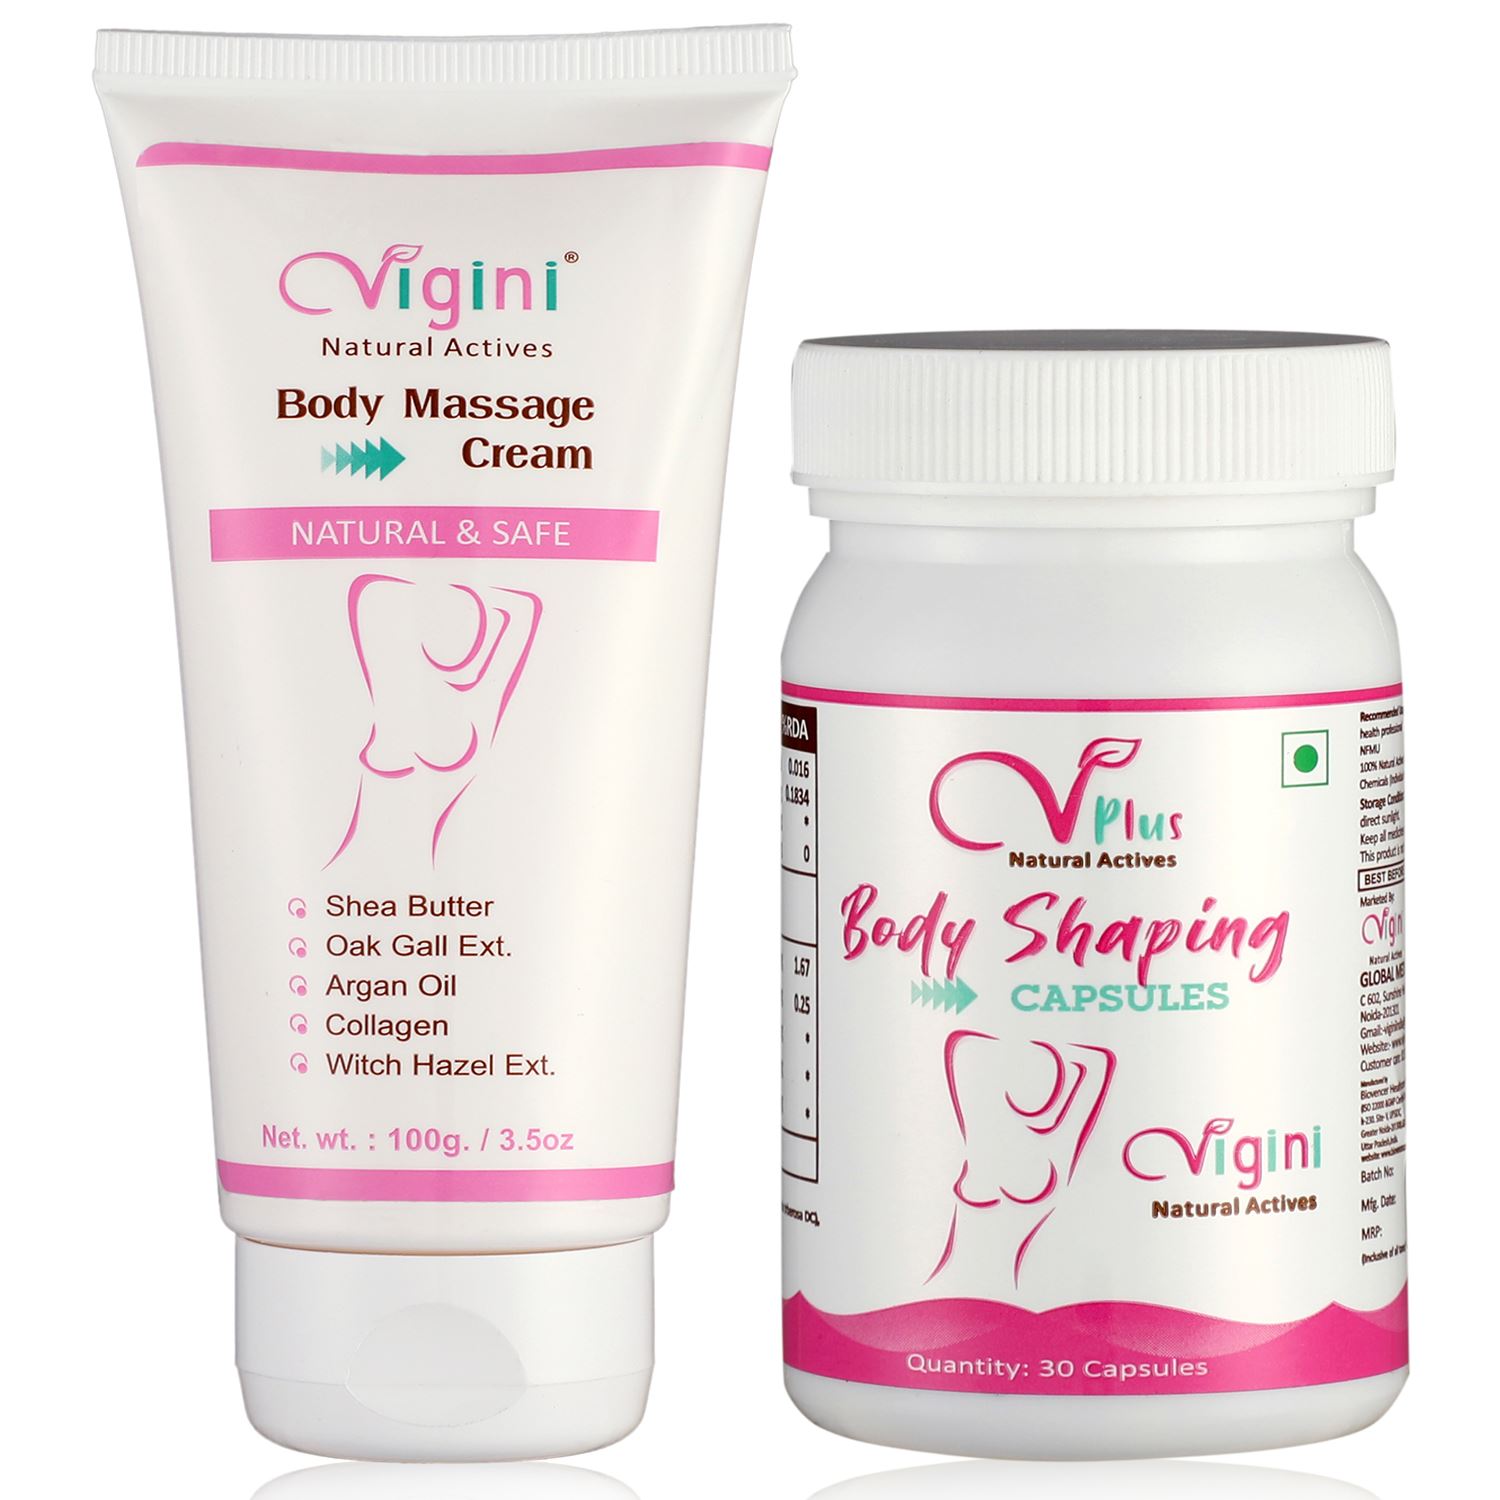 Vigini Breast Body Boobs Size Enlargement Oil Cream with Capsule